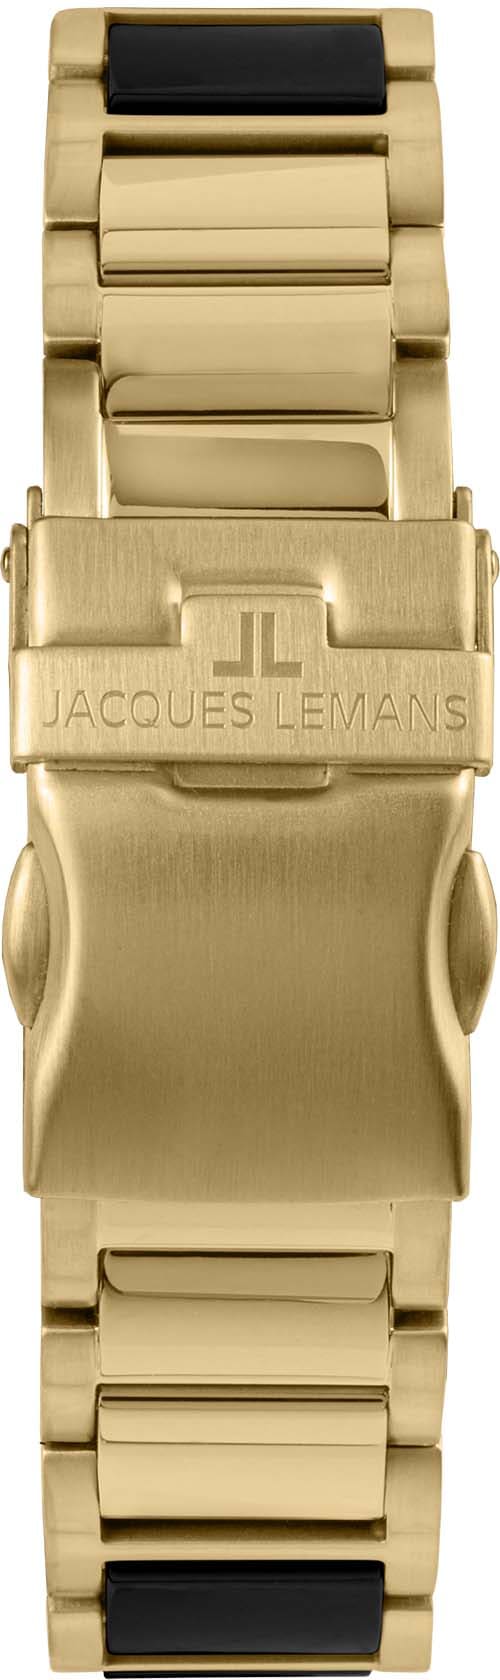 Jacques Lemans Keramikuhr »Liverpool, 42-10G«, Quarzuhr, Armbanduhr, Herrenuhr, Datum, Leuchtzeiger